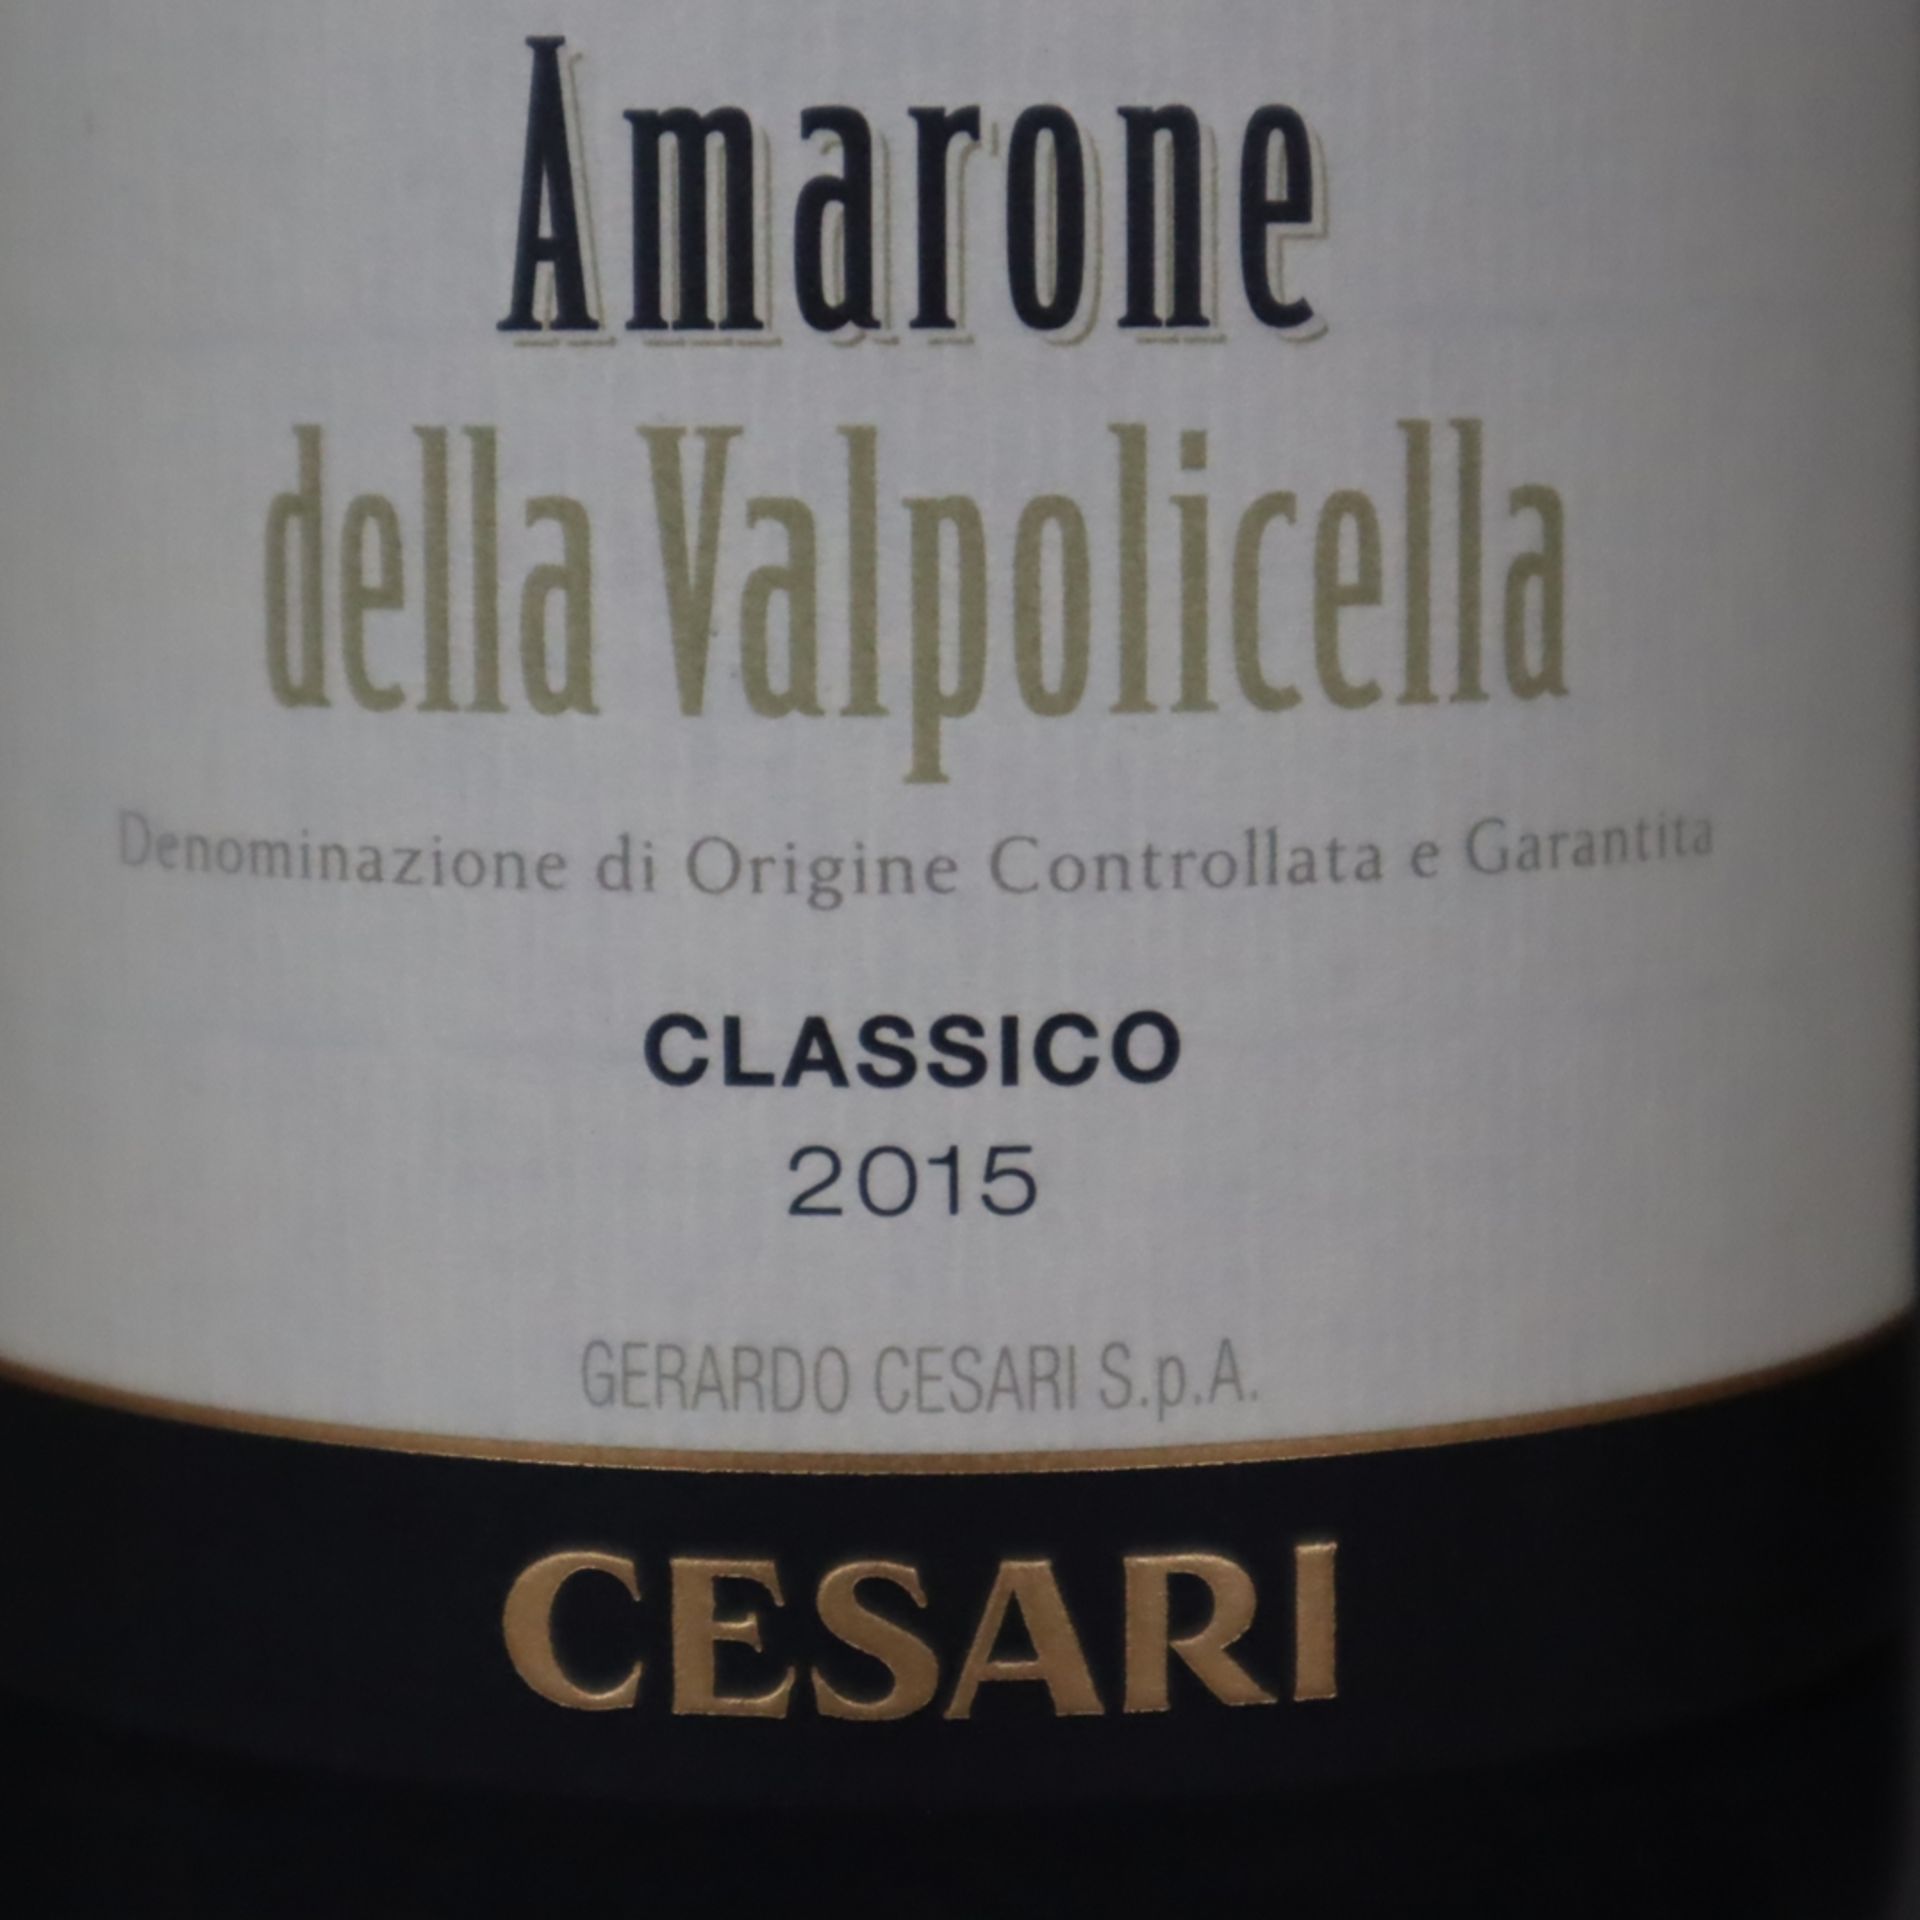 Weinkonvolut - 2 Flaschen, Cesari Amarone della Valpolicella, Classico, Jahrgang 2015, 0,7 Liter - Bild 4 aus 5